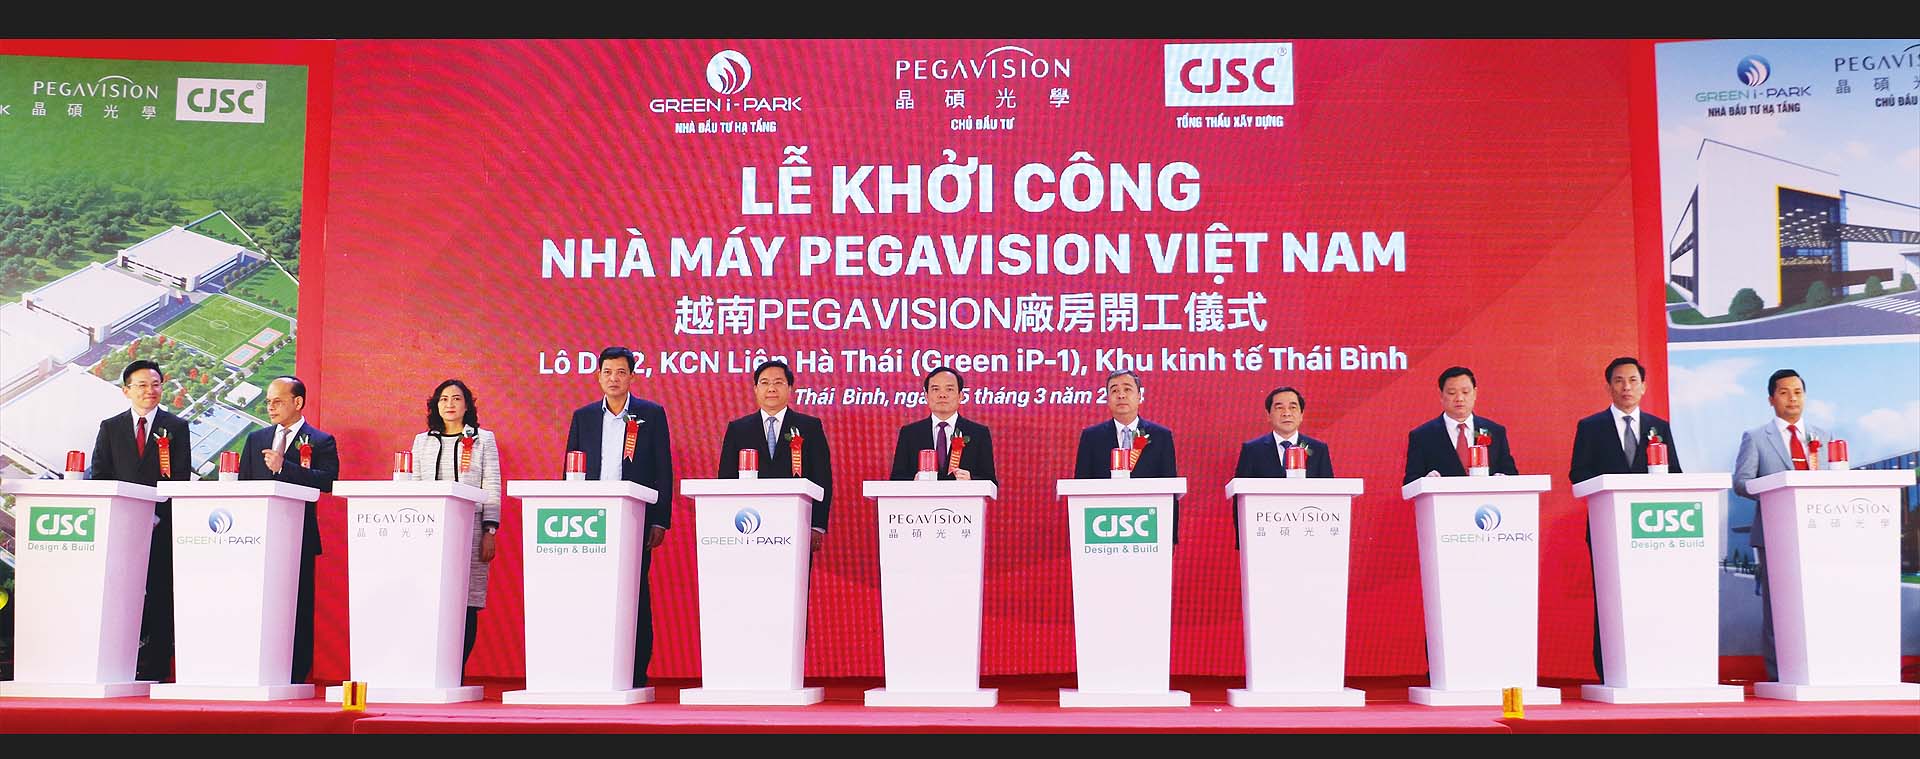 Phó thủ tướng Trần Lưu Quang, đại diện các bộ, ngành Trung ương, tỉnh Thái Bình cùng Green i-Park ấn nút khởi công Dự án nhà máy 200 triệu USD tại Khu công nghệp Green iP-1